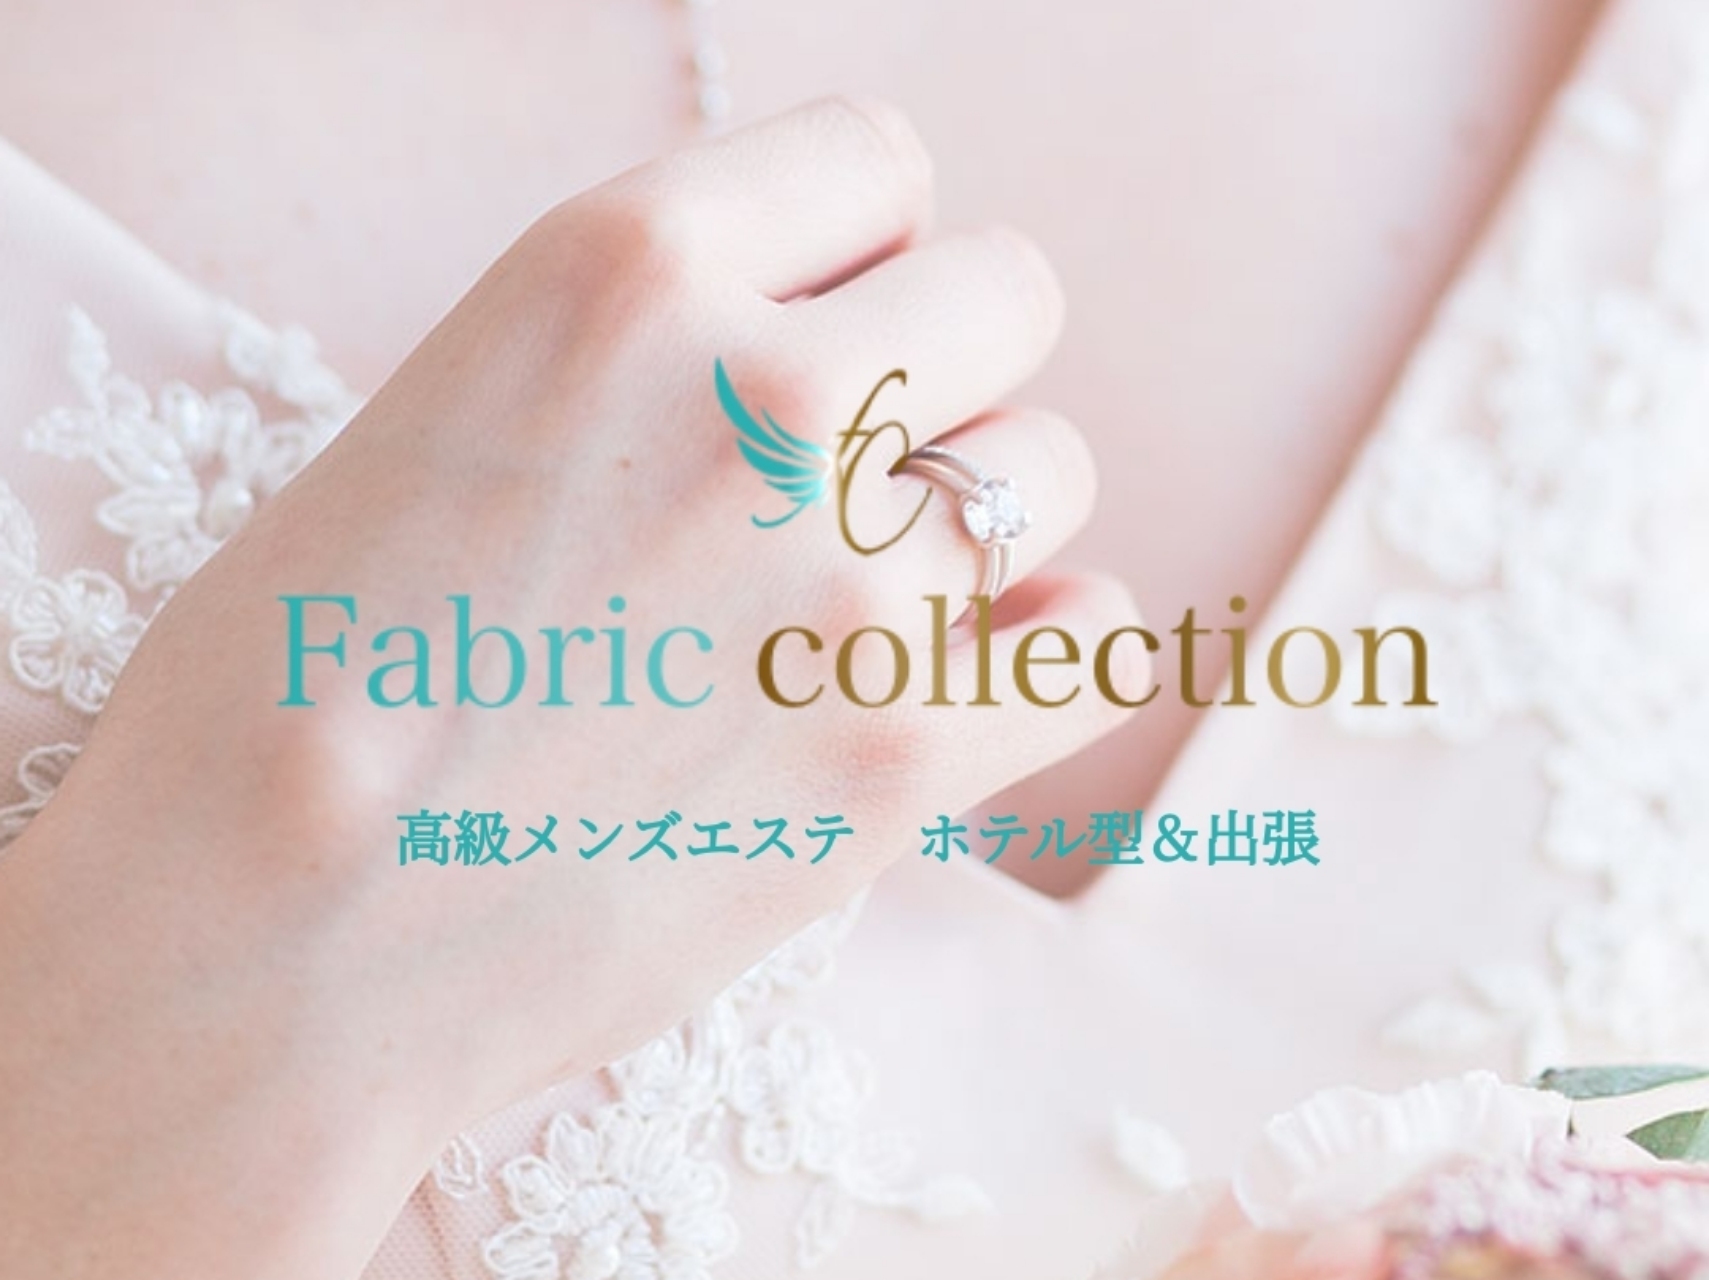 Fabric collection [ファブリックコレクション]